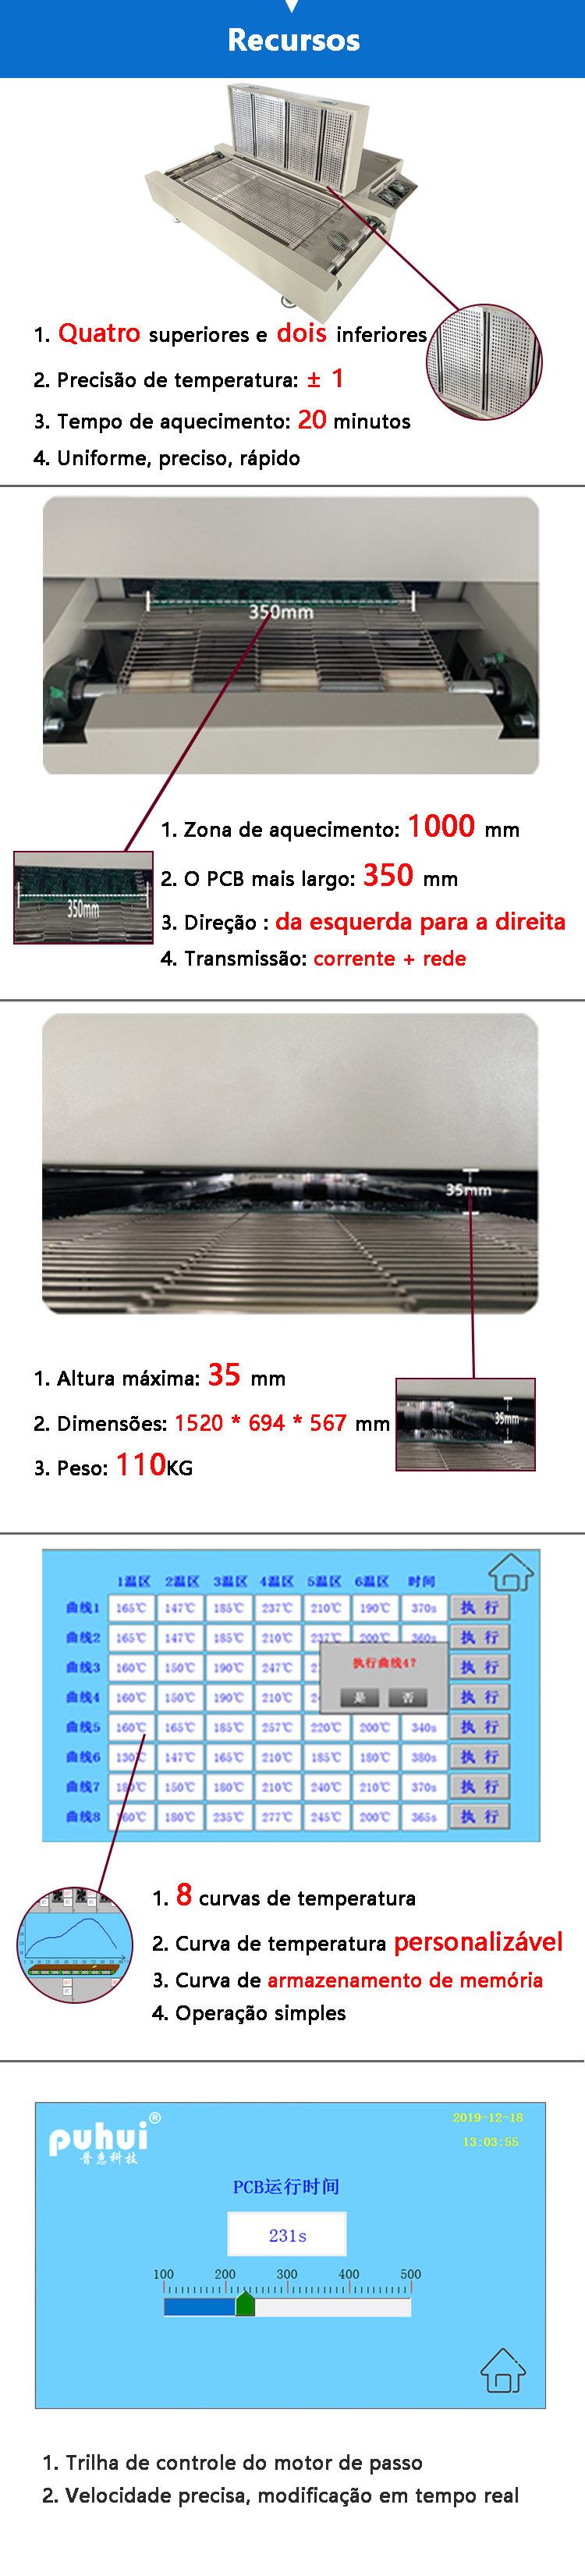 Display de recurso de forno de refluxo de canal T-961S